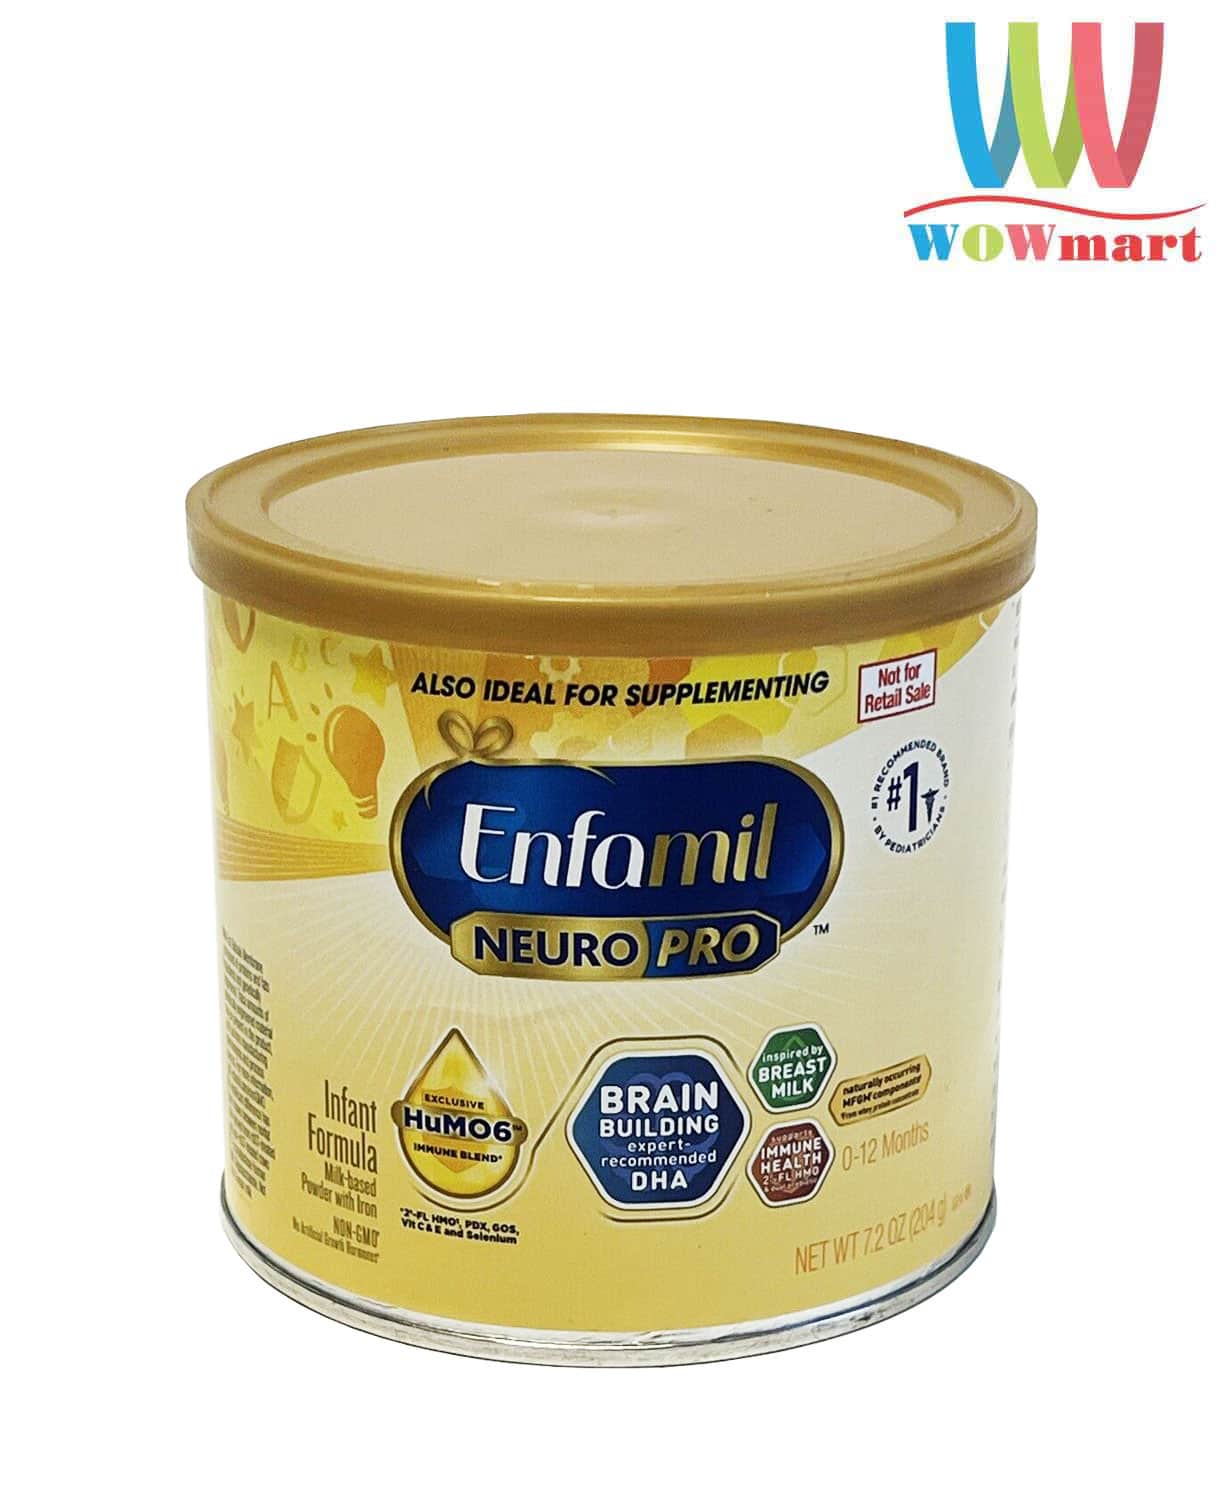 Sữa Enfamil cho bé 0-12 tháng tuổi Enfamil Neuro Pro Non-GMO Infant 204g –  Wowmart VN | 100% hàng ngoại nhập